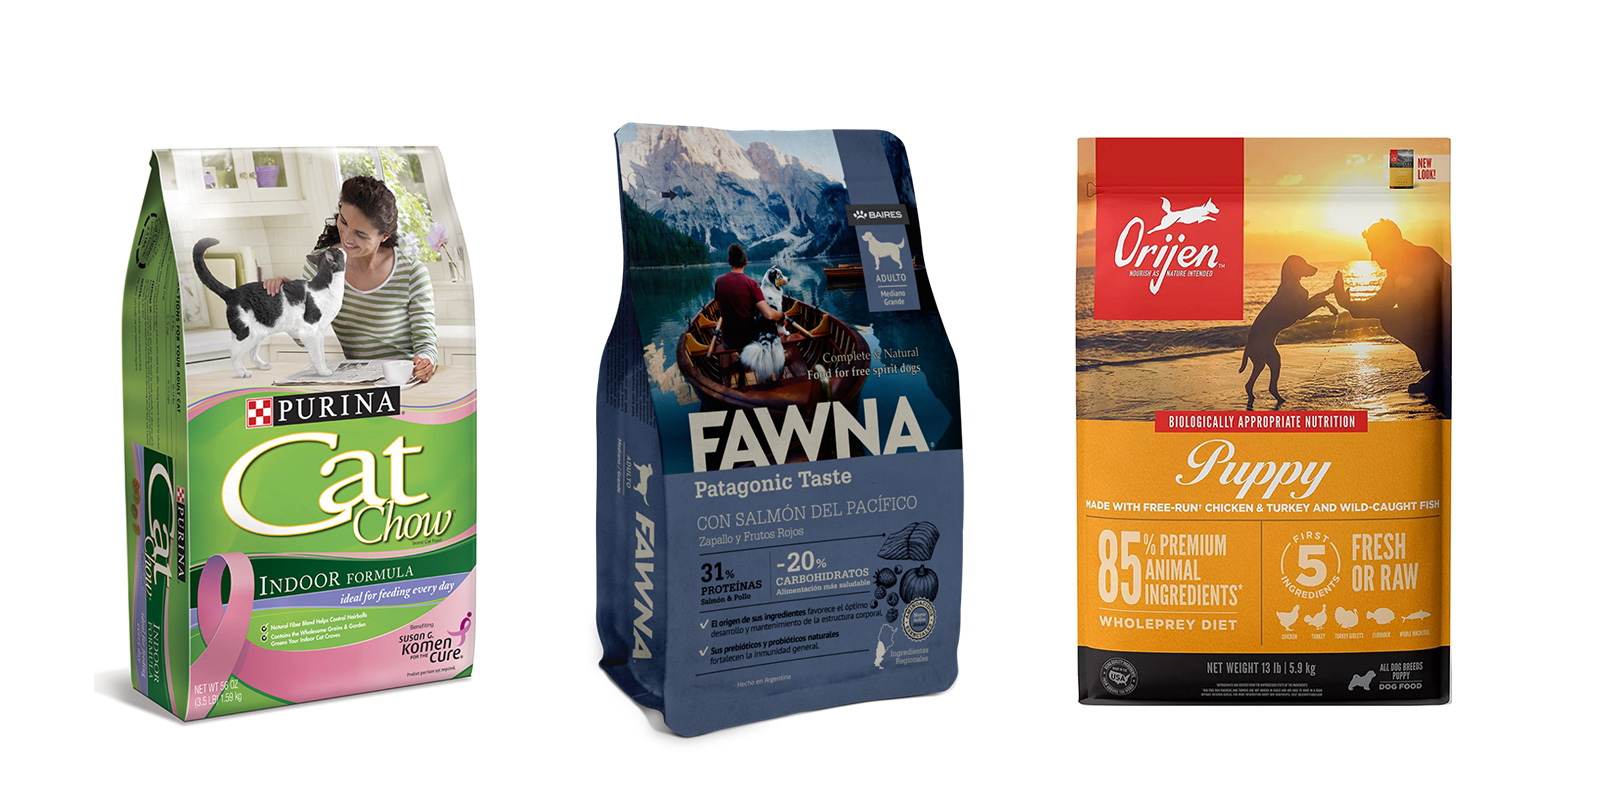 Tres bolsas de alimento para mascotas marcas Purina Cat Chow Indoor Formula, Fawna Patagonic Taste Adulto para Perros y Orijen Puppy. Diseño de packaging basado en la estrategia de cautivar desde el vínculo humano-mascota.